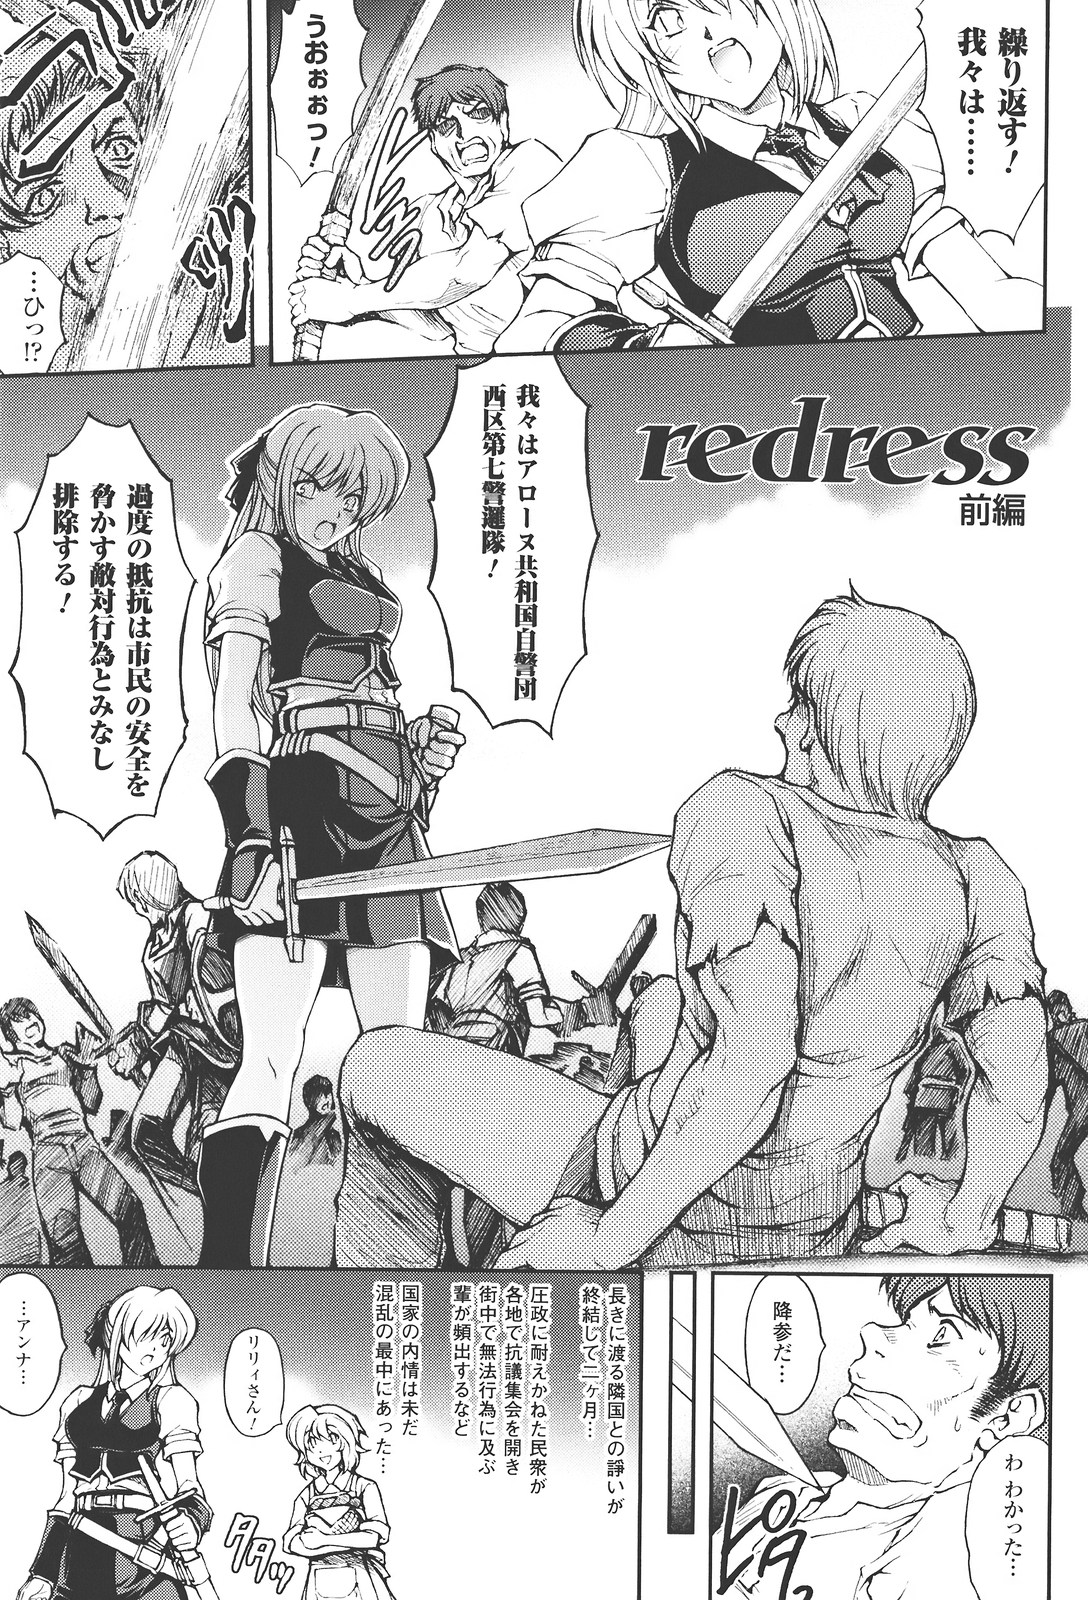 [Shinade Kuro] redress [科手黒] redress レッドレス [10-07-15]